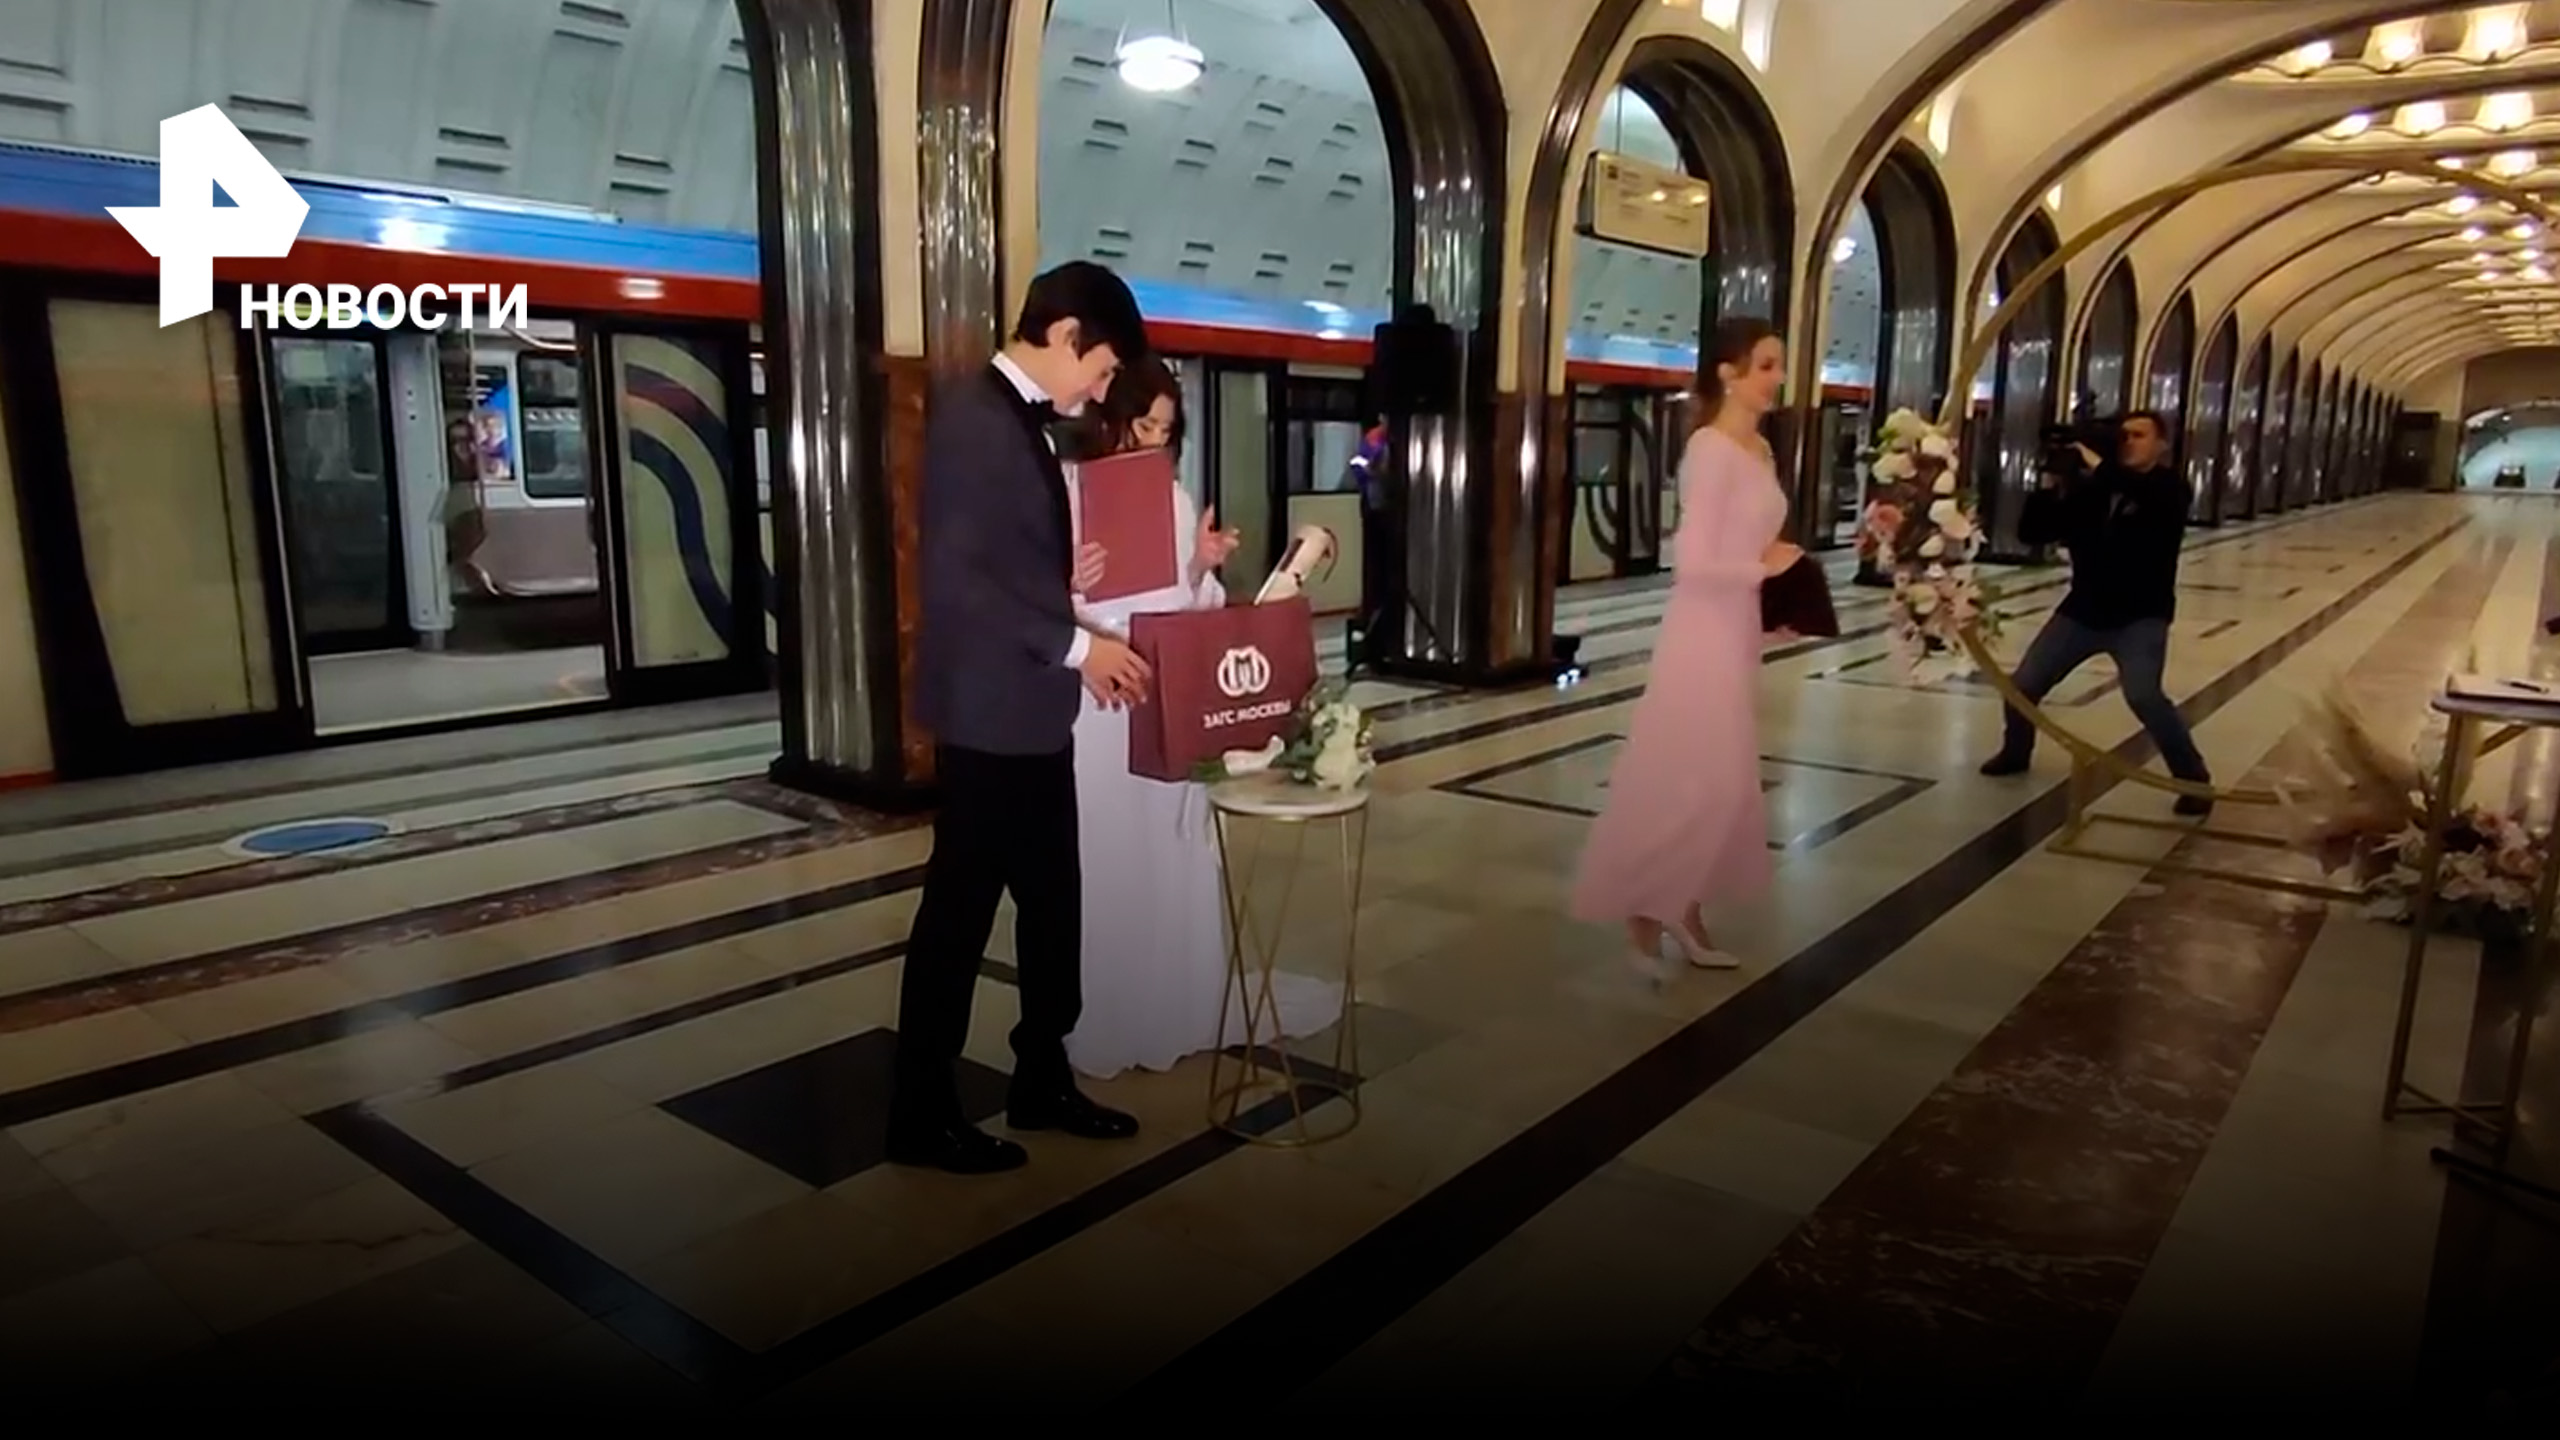 Пожениться в метро в четыре утра: как отмечают свадьбы в подземке / РЕН Новости